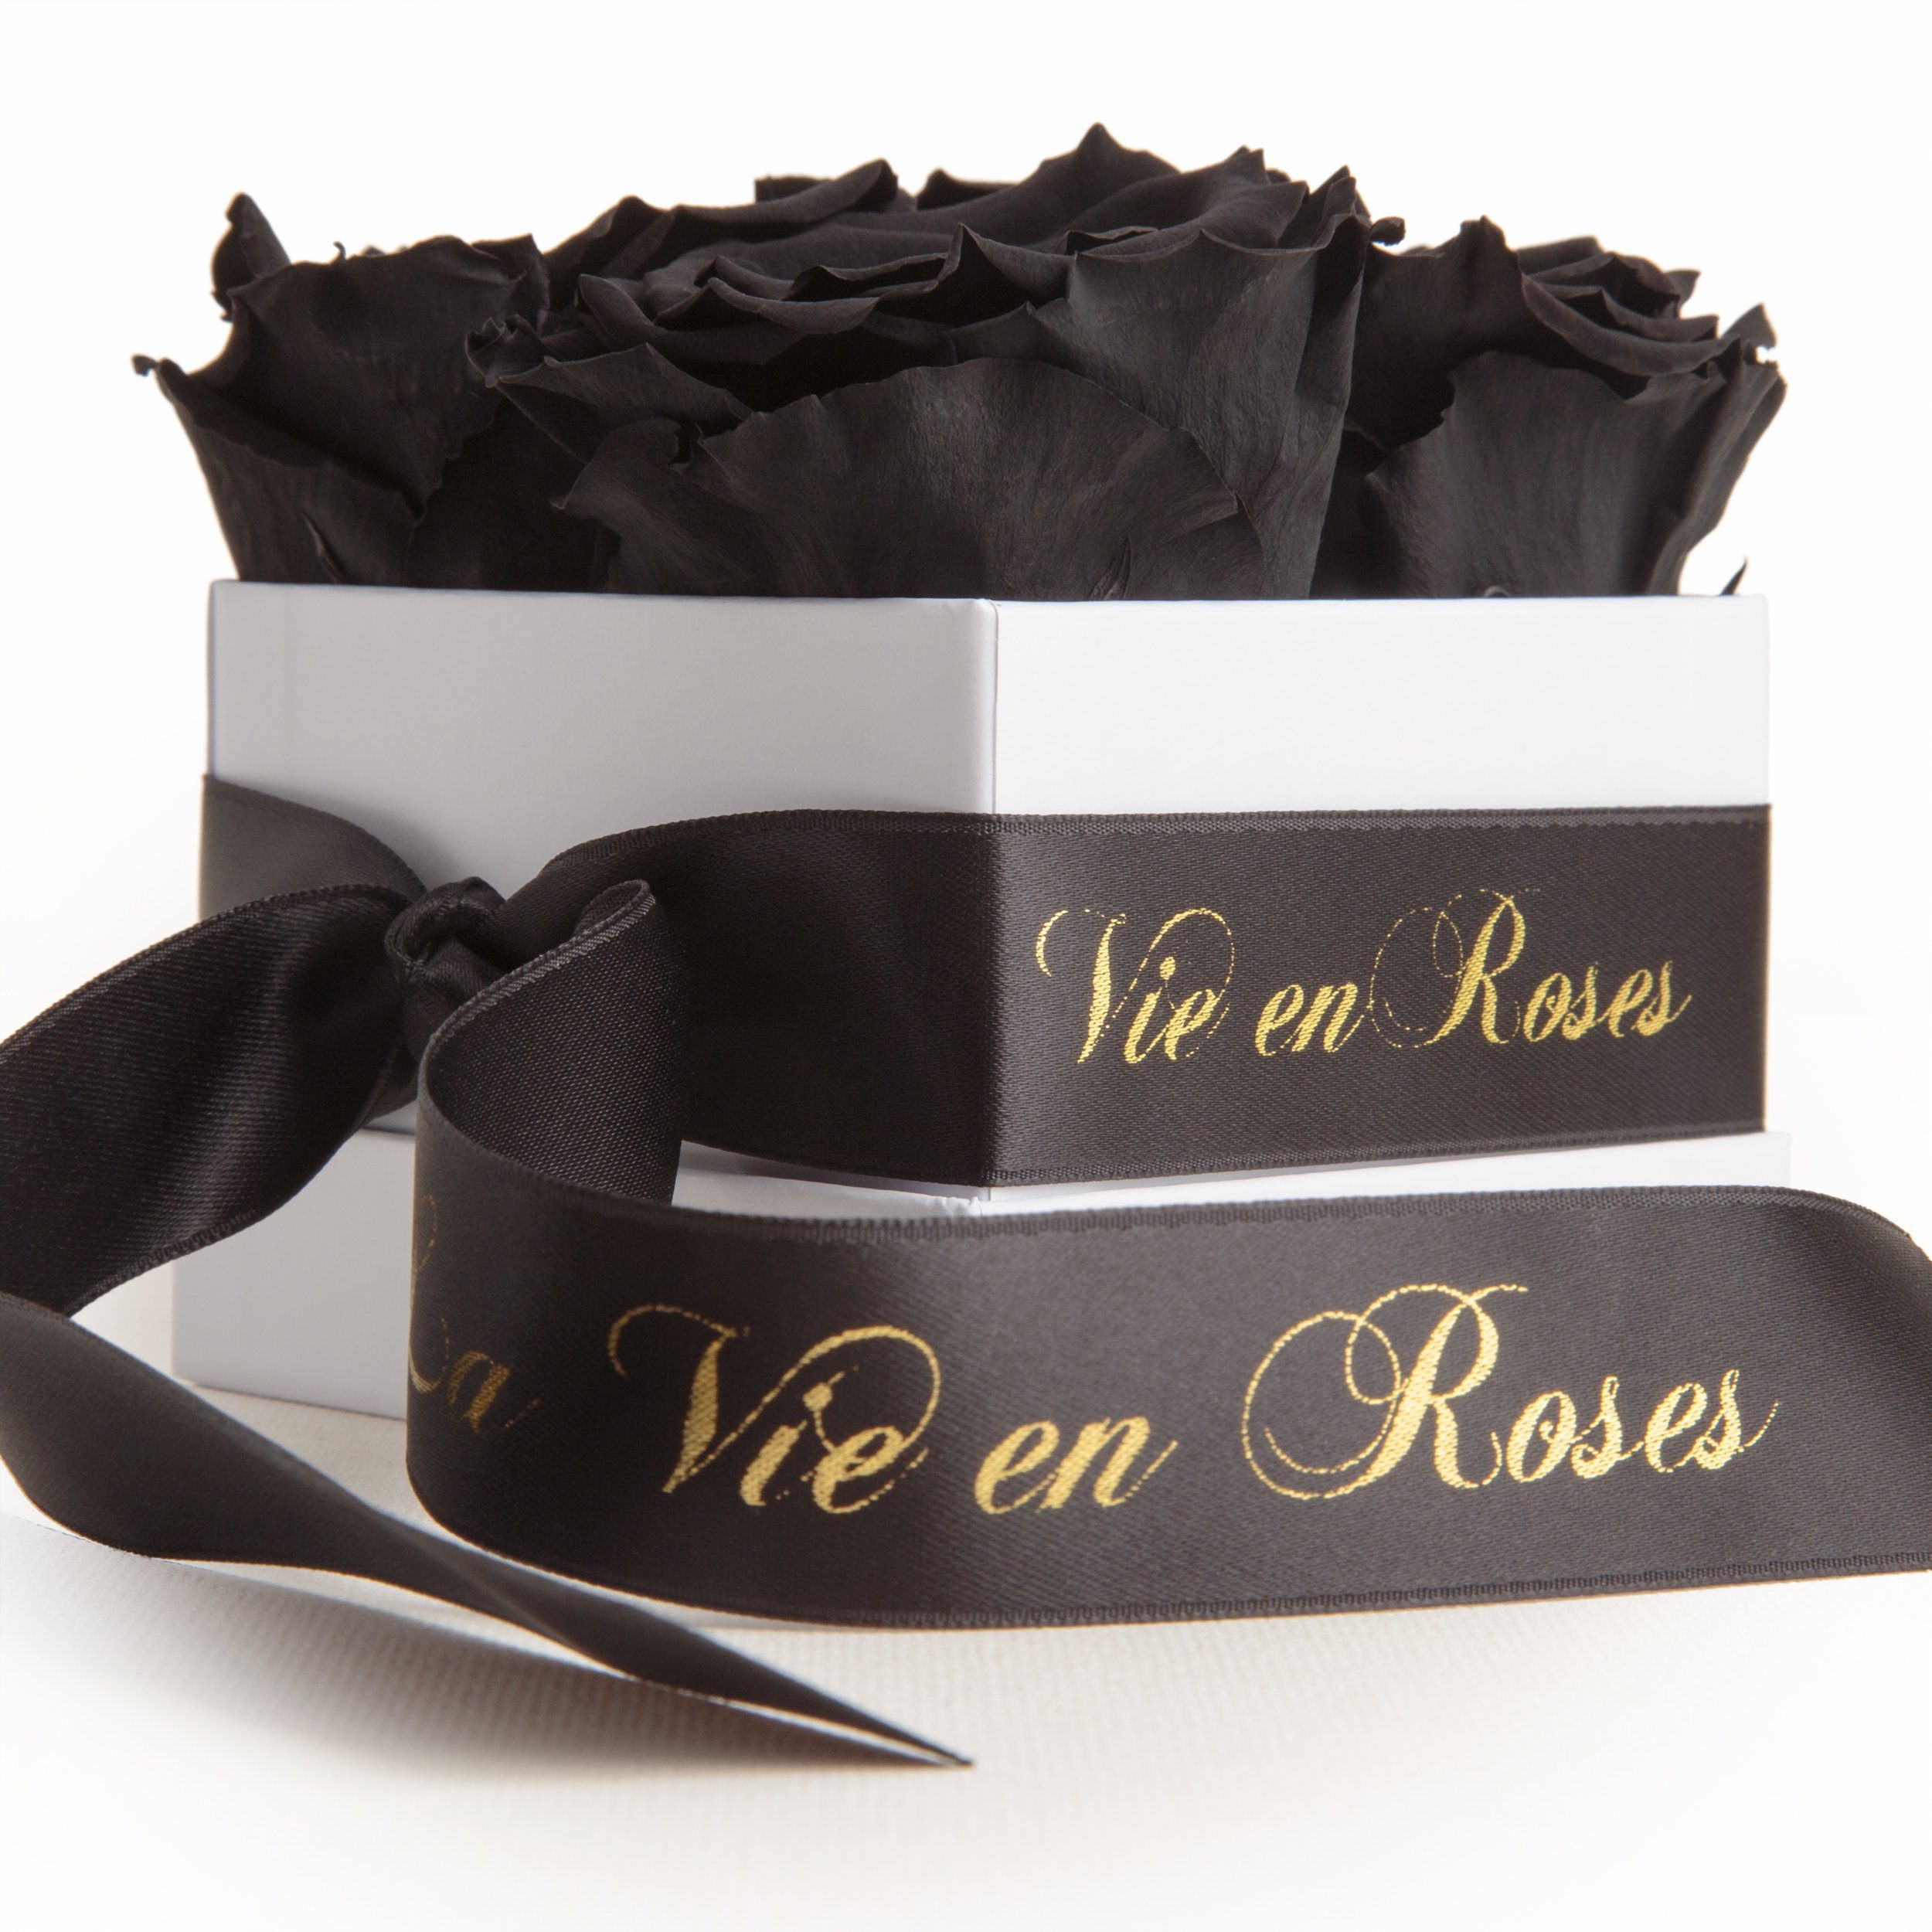 Kunstblume Rosenbox weiß Infinity Rosen Poesie Deko Geschenk für Damen Rose, ROSEMARIE SCHULZ Heidelberg, Höhe 8.5 cm, für Frauen zum Valentinstag schwarz